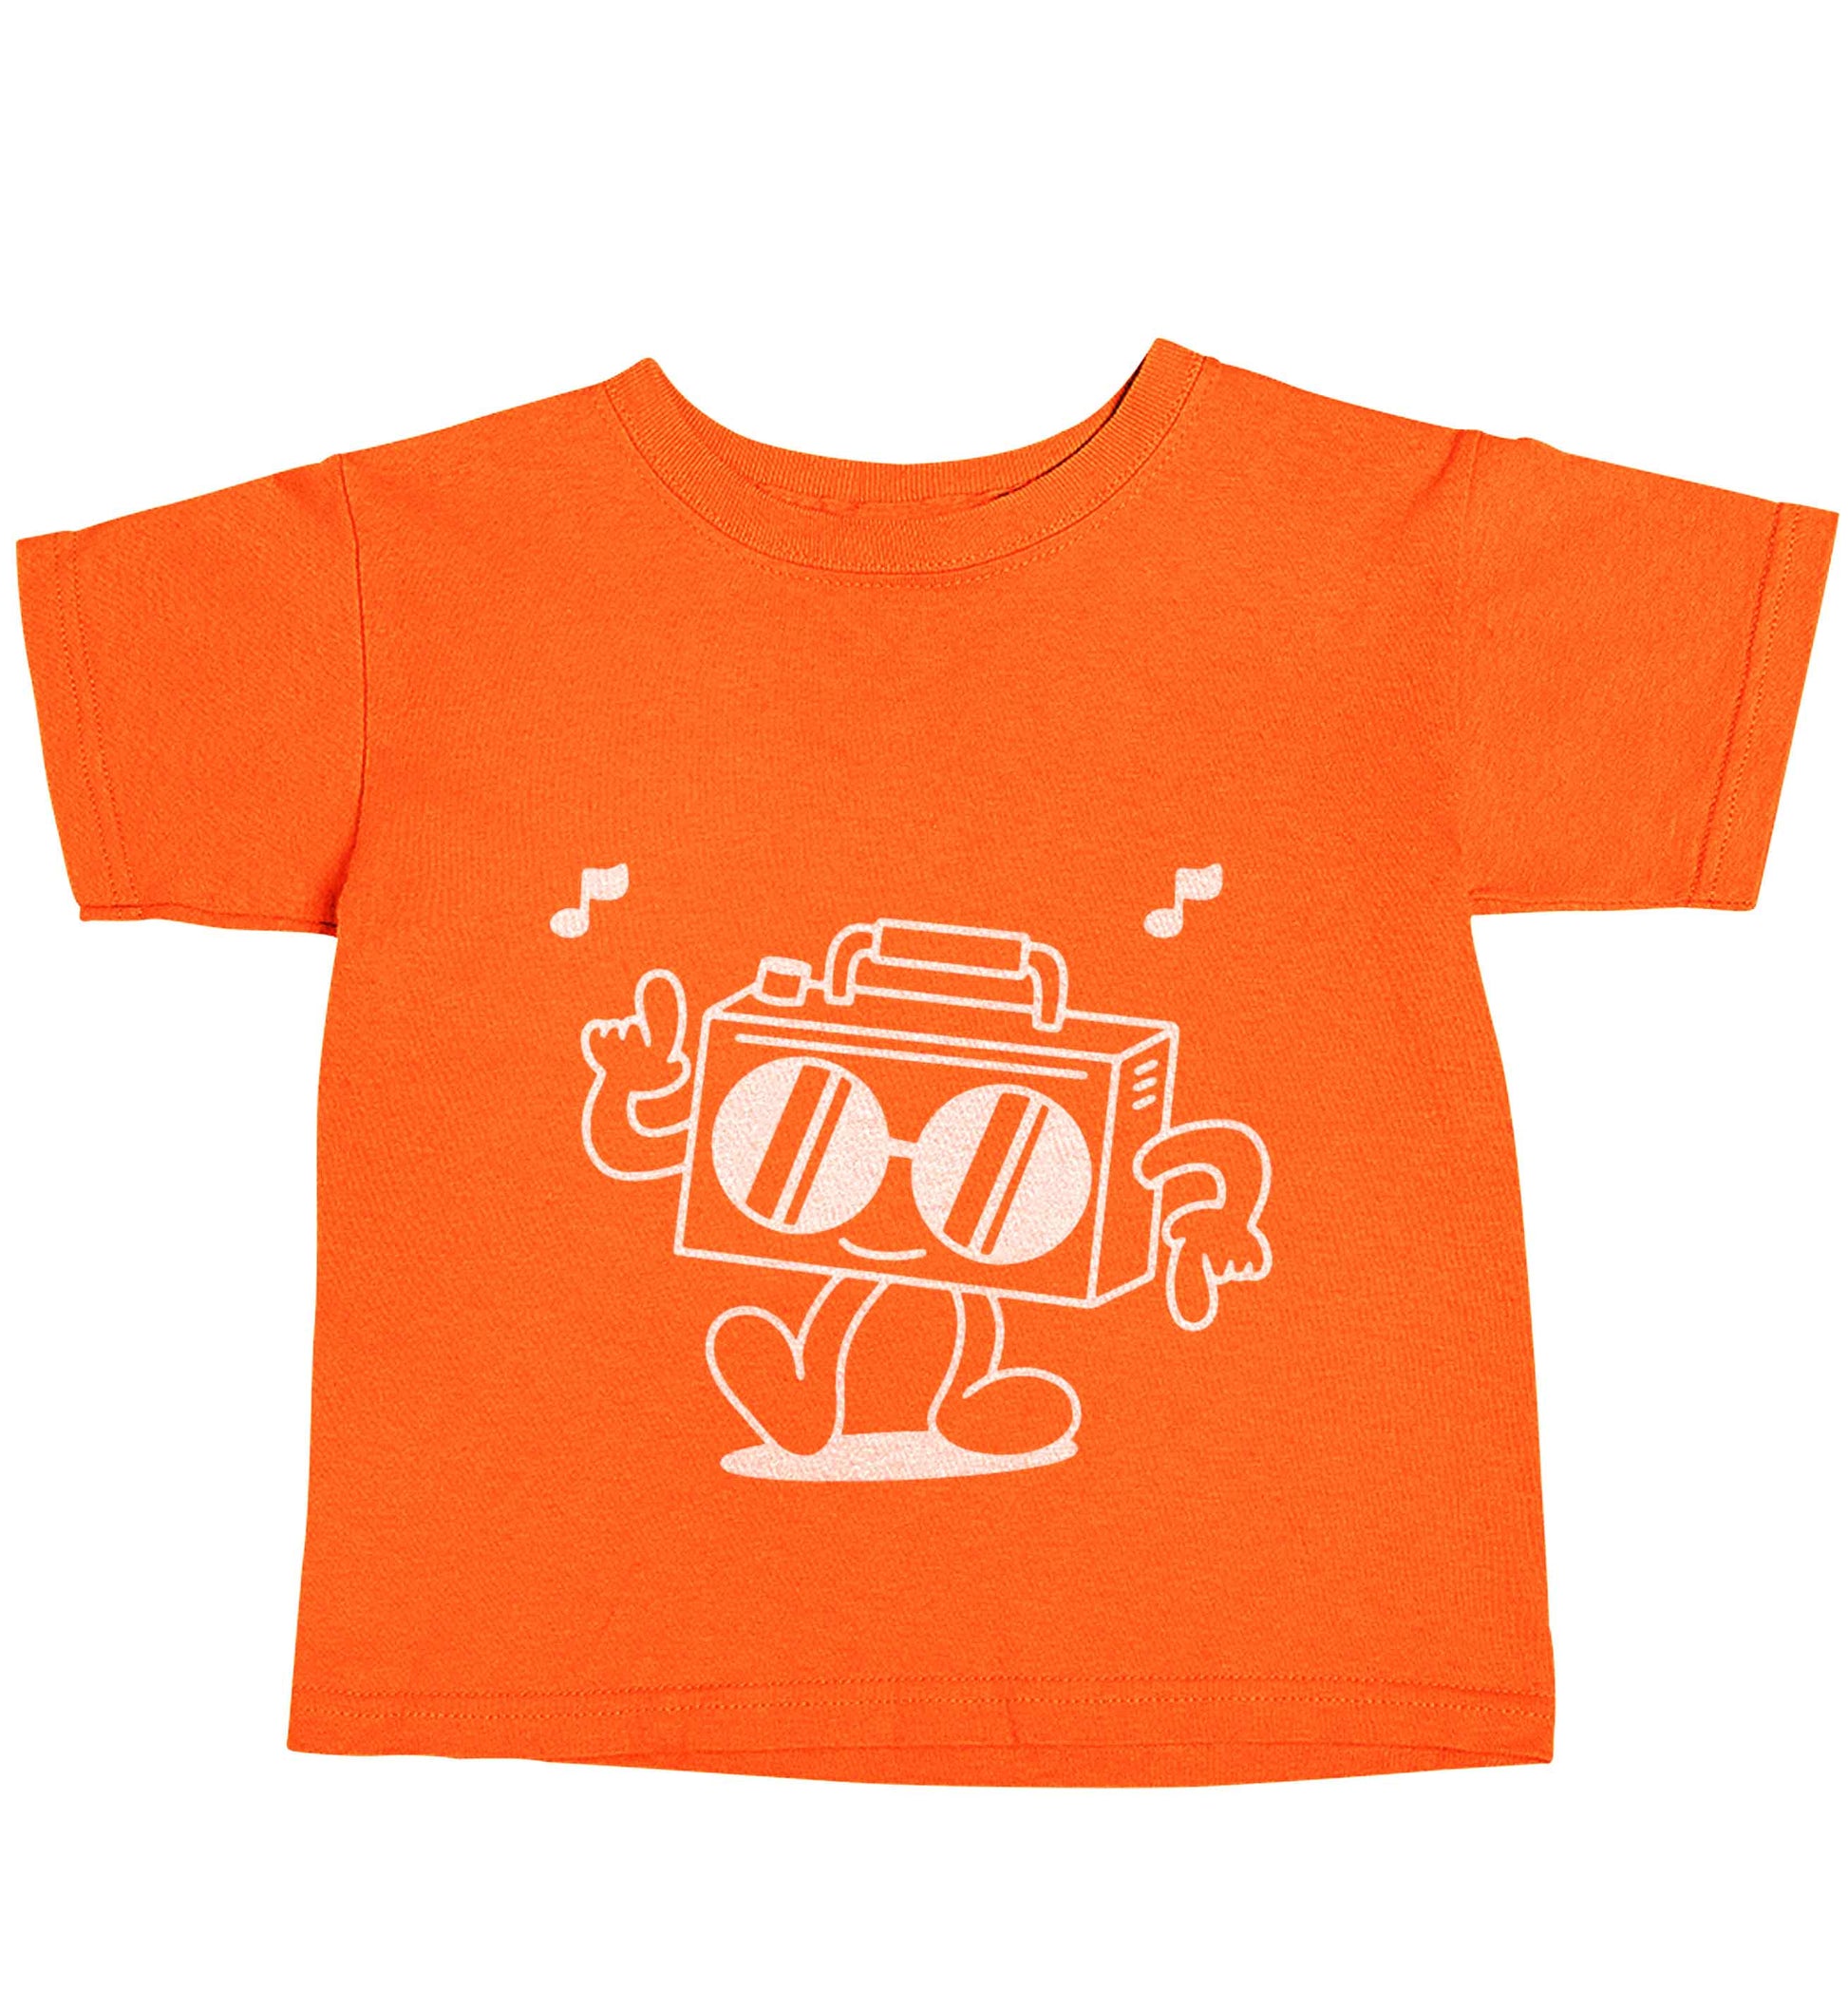 Boombox orange baby toddler Tshirt 2 Years